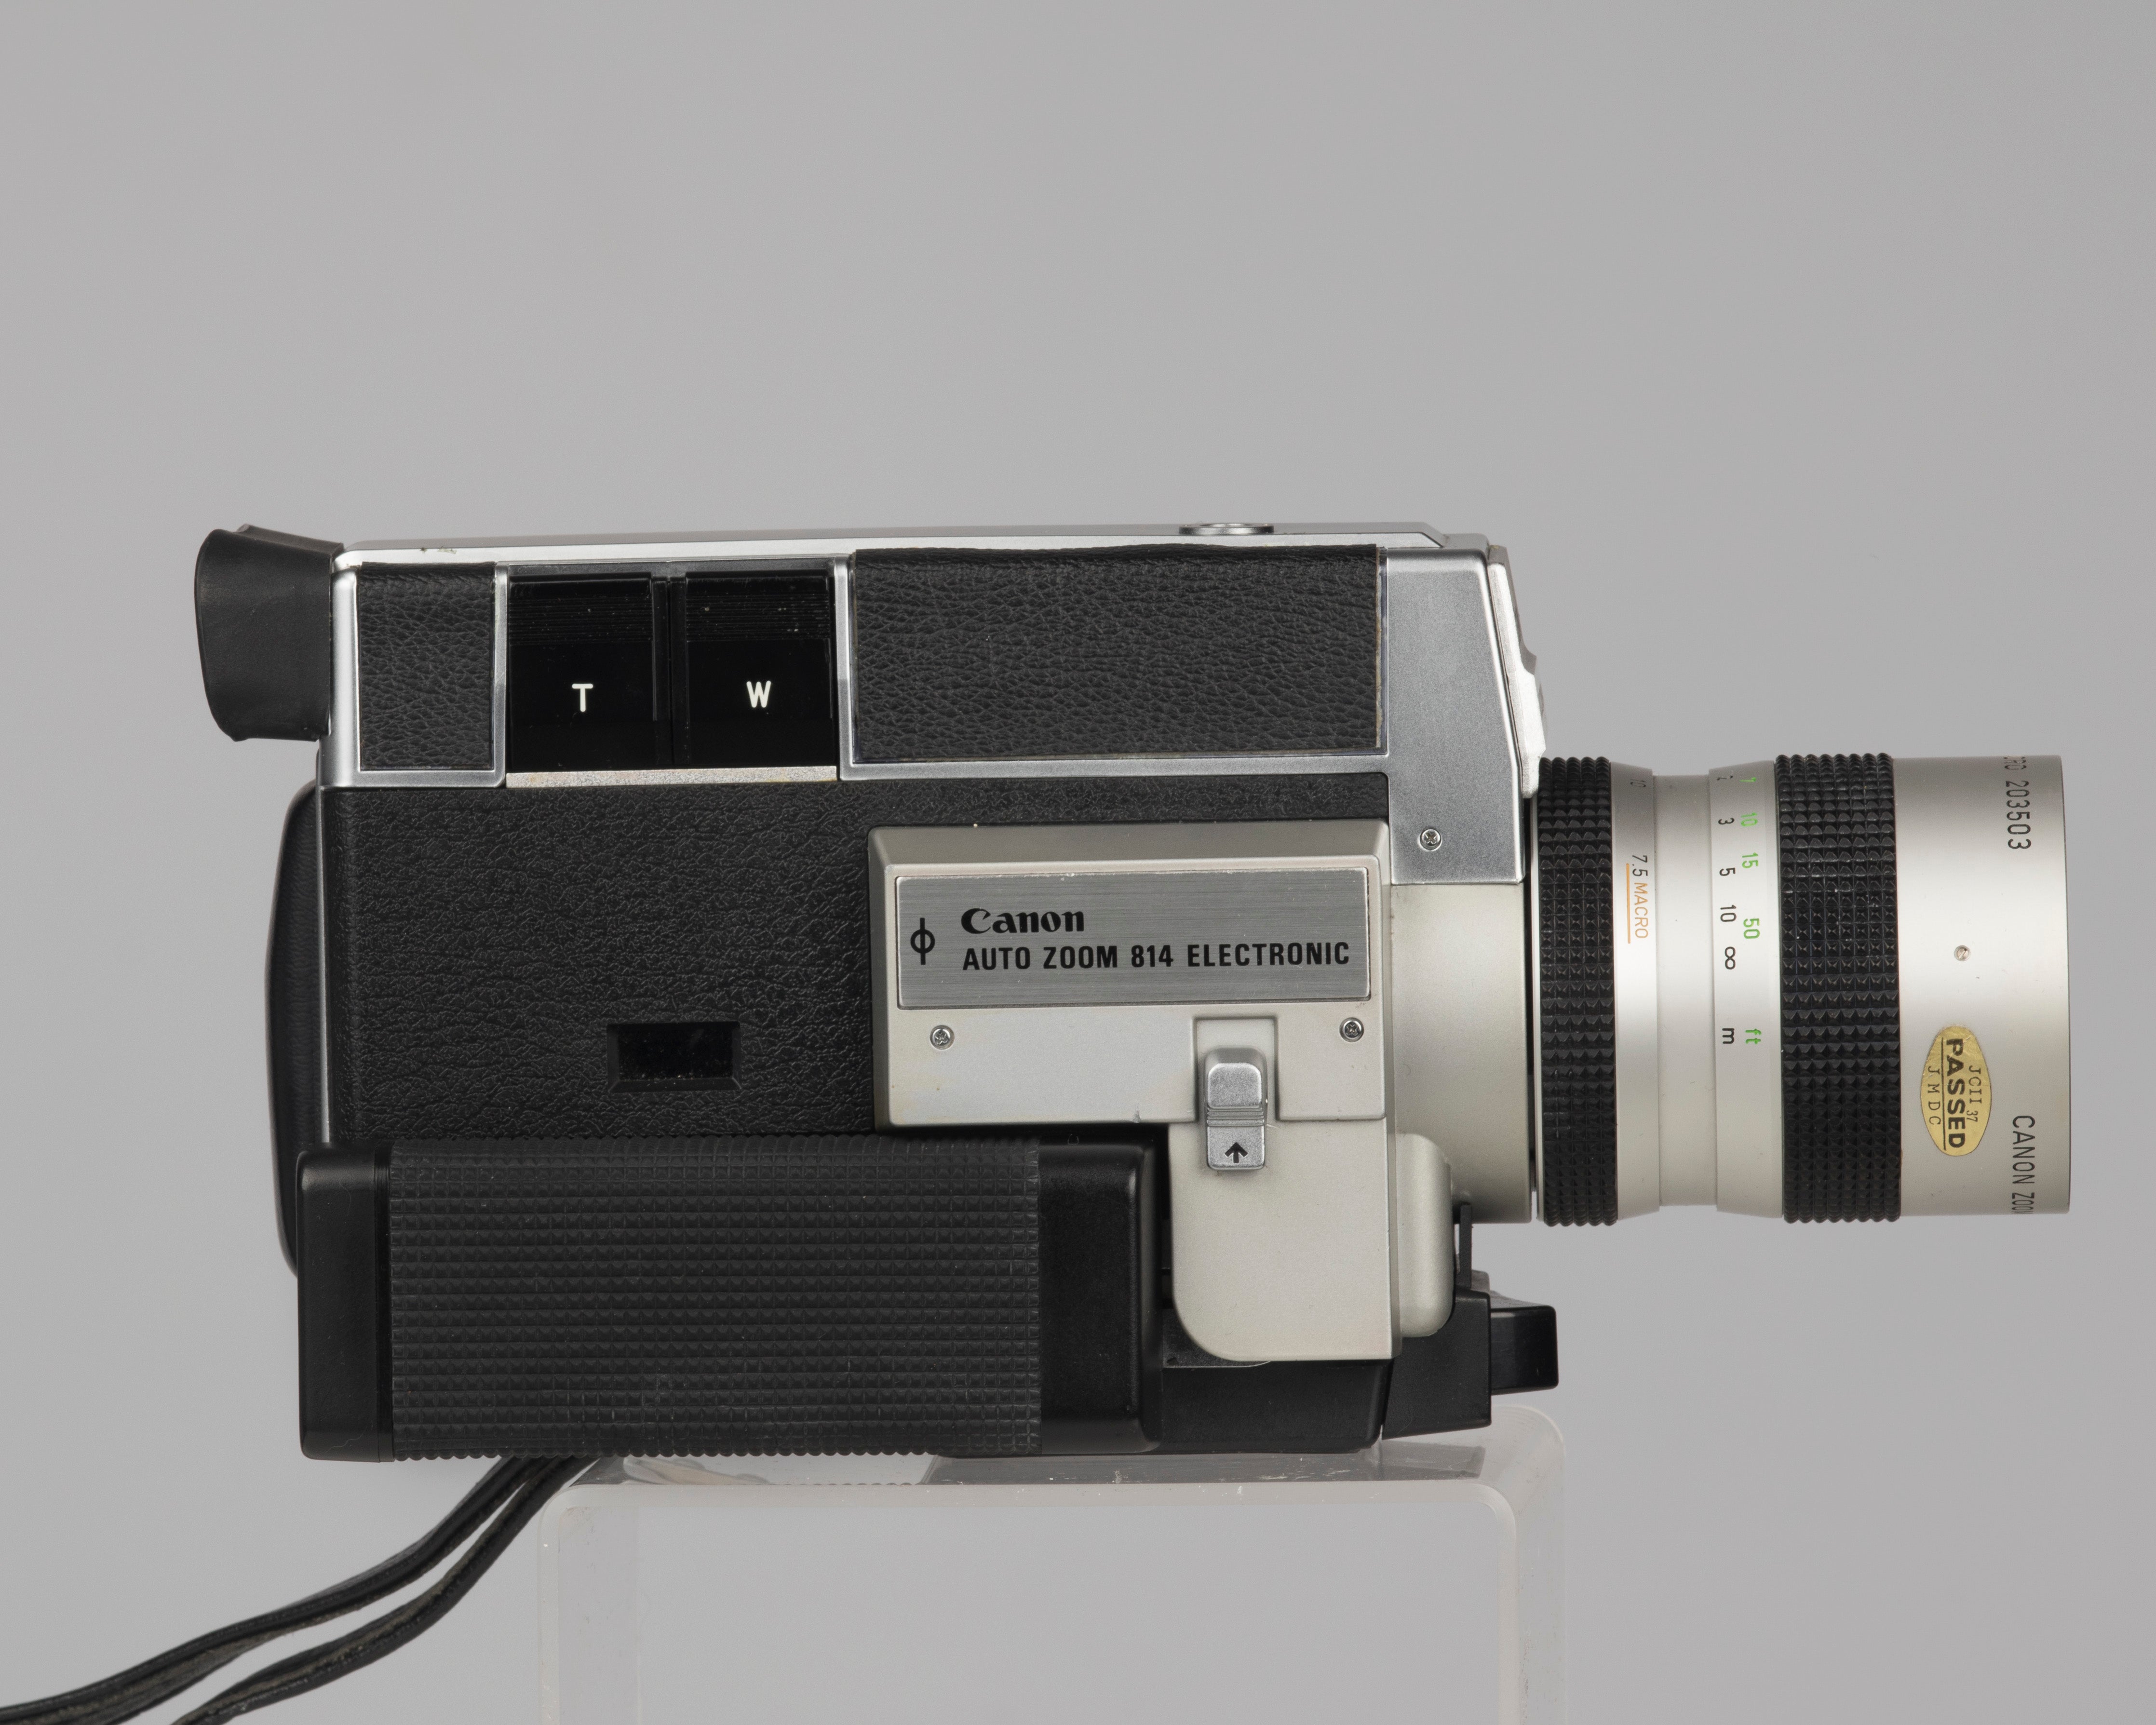 Canon Auto Zoom 814 Electronic Super 8 movie camera – New 